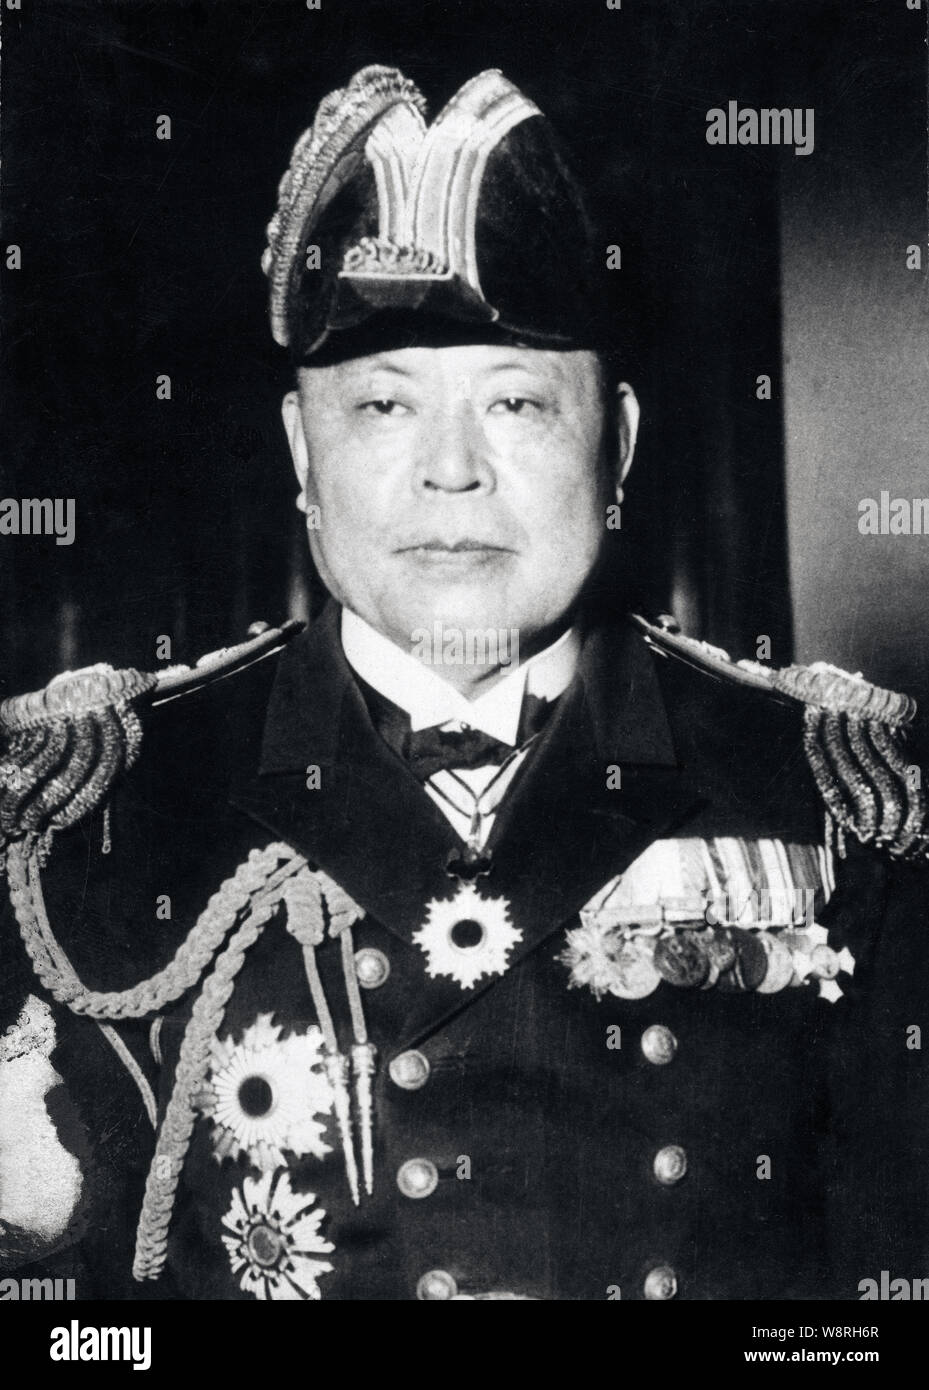 [1930er Jahre Japan - Japanische Minister der Marine Admiral Mineo Osumi] - Mineo Osumi (1876 - 1941) war ein Admiral in der Kaiserlichen Japanischen Marine und diente zweimal als Minister für die Marine von Japan. Er getötet wurde am 5. Februar 1941 (Showa 16), während des Zweiten Japanisch-Chinesischen Krieges, als seine Marine Transport Flugzeug durch chinesische Guerilla erschossen wurde. Stockfoto